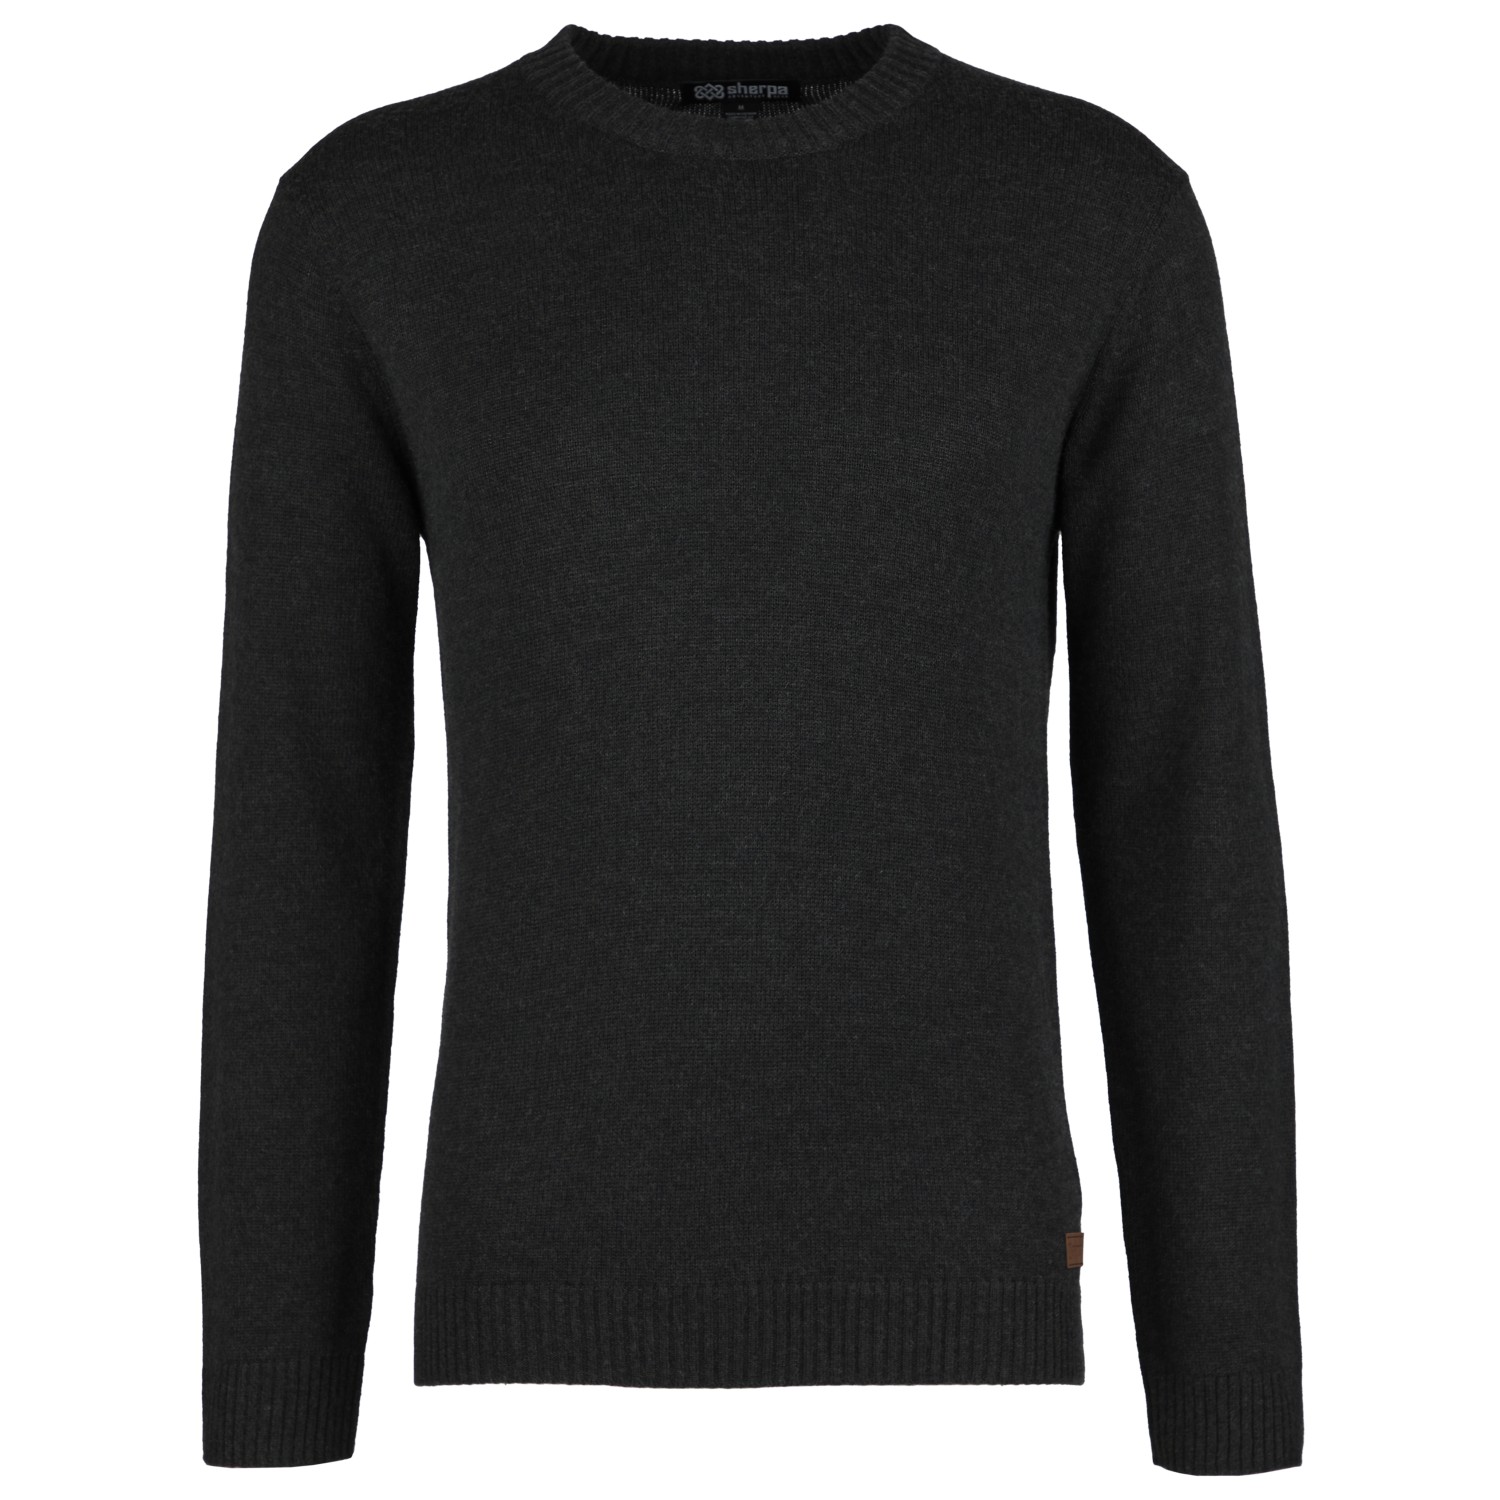 Пуловер Sherpa Phoktey Crew, черный осенний свитер сказочный тонкий однотонный мягкий мужской свитер для работы мужской свитер зимний свитер